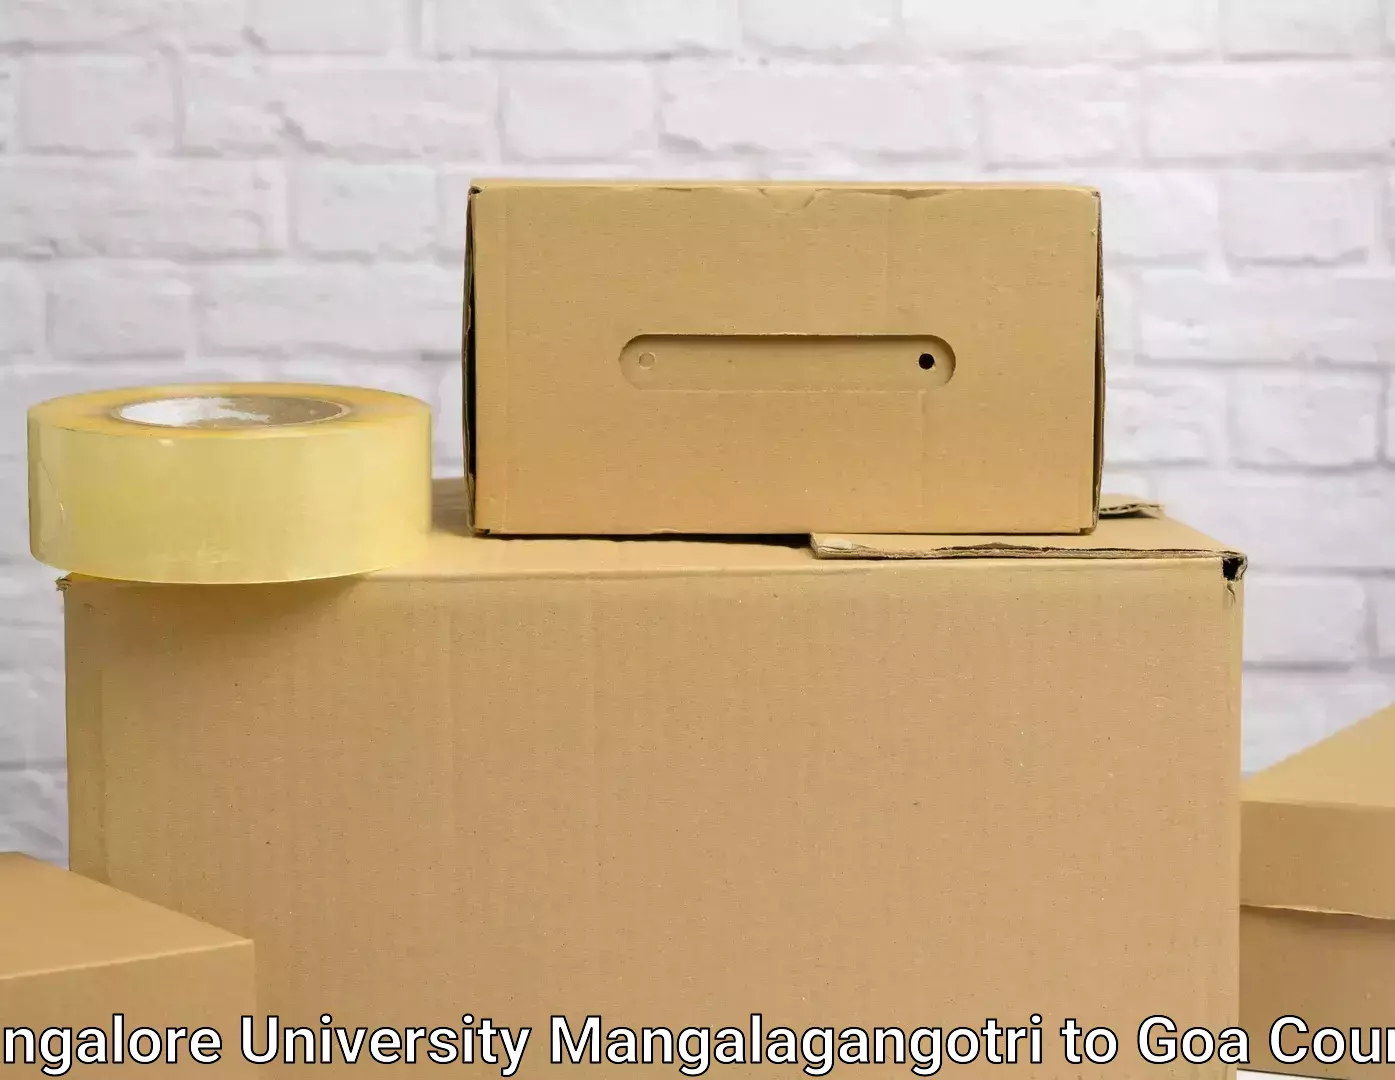 Dependable moving services in Mangalore University Mangalagangotri to Goa University